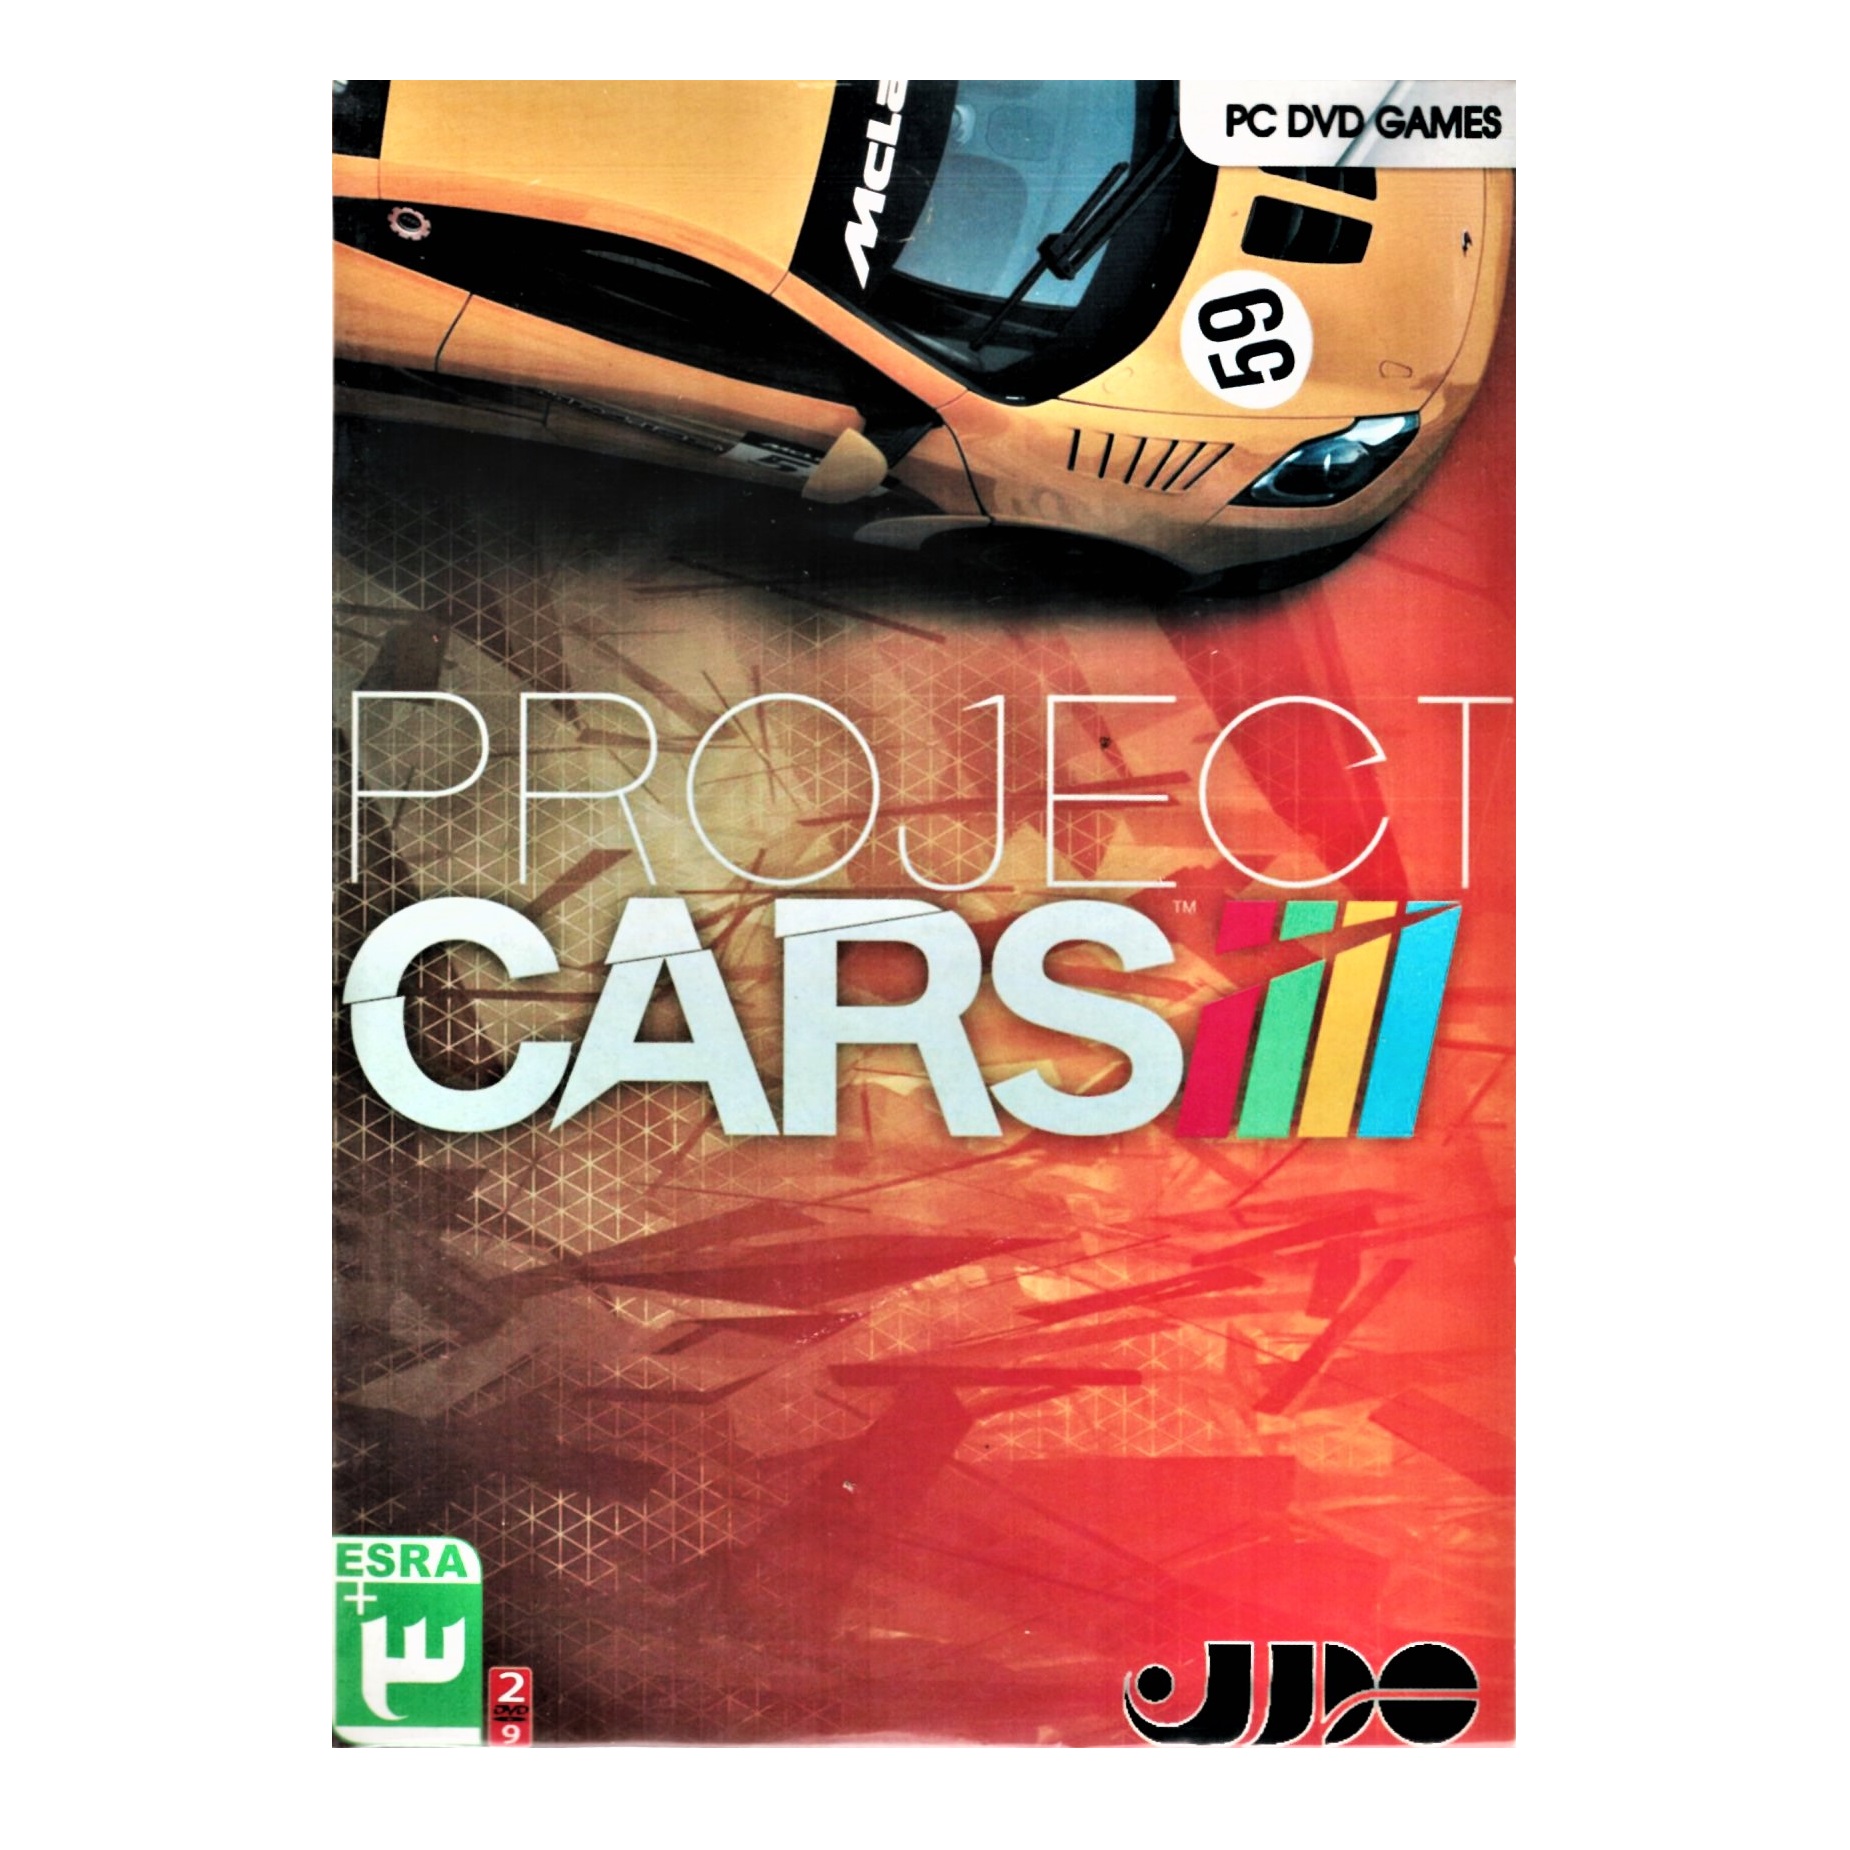 بازی Project Cars مخصوص PC